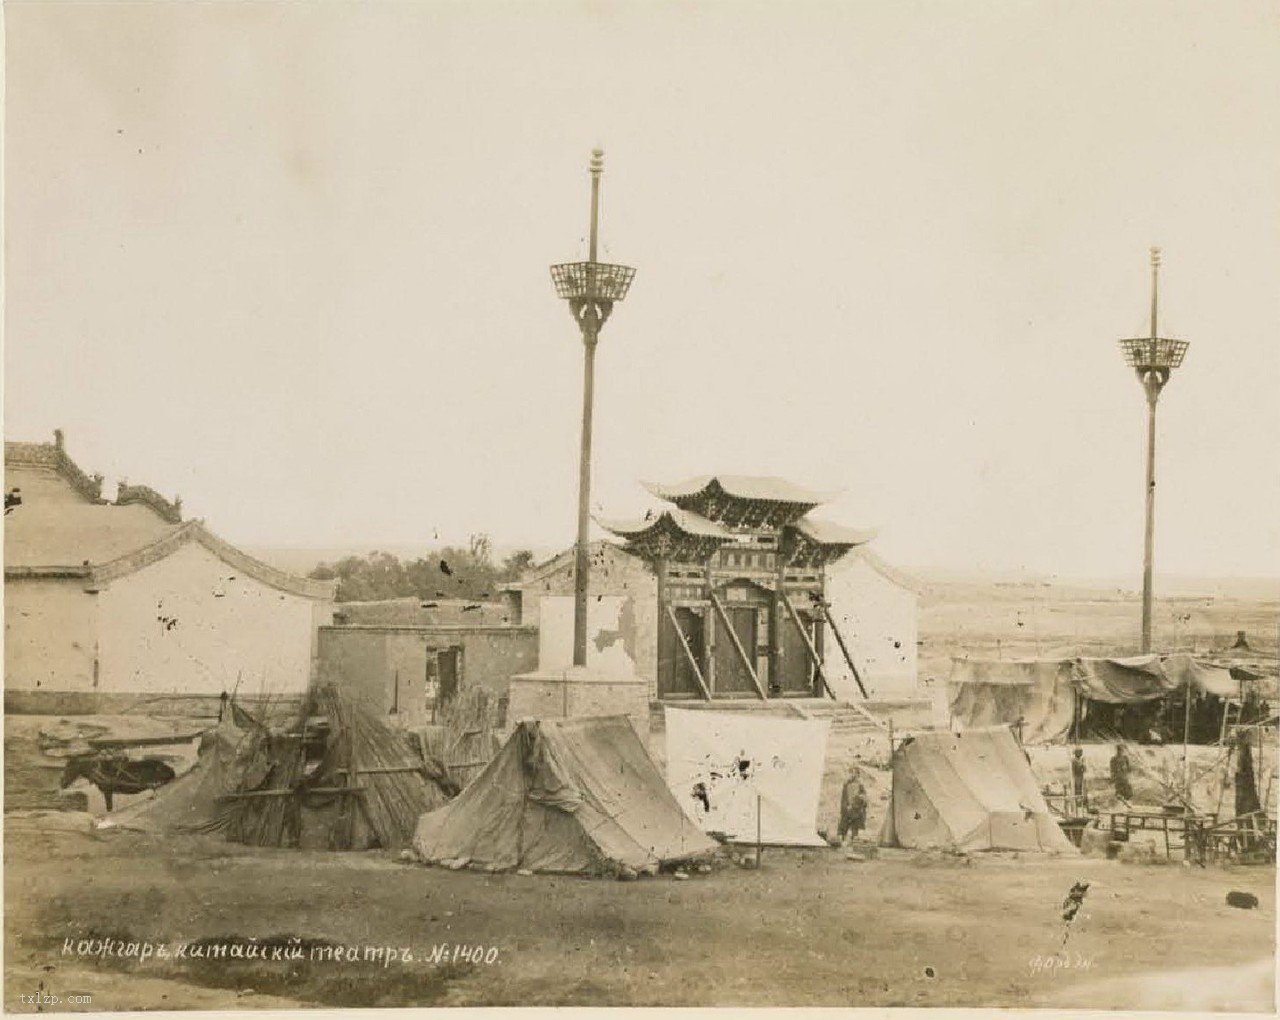 从老照片看—昔日的新疆喀什市 - 图说历史|国内 - 华声论坛